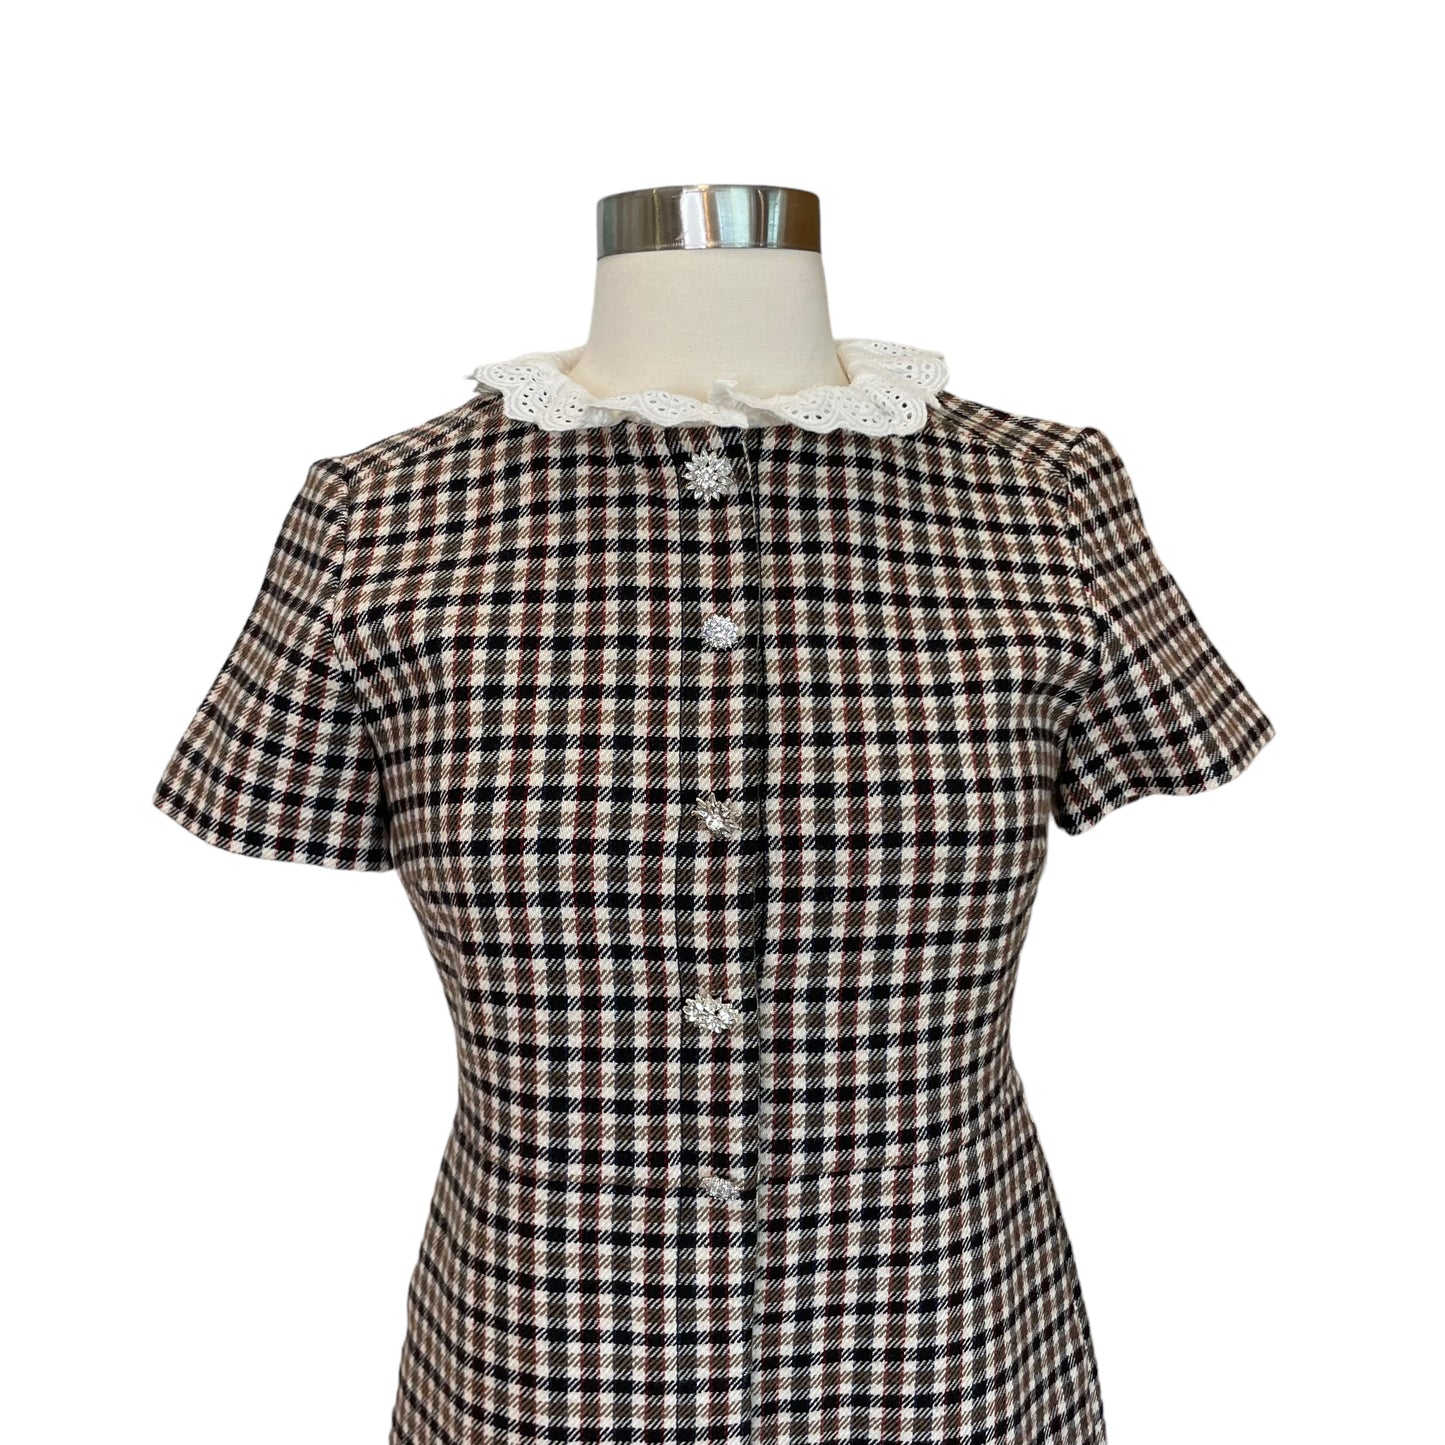 Checker Print Dress w/ Lace Collar - XS